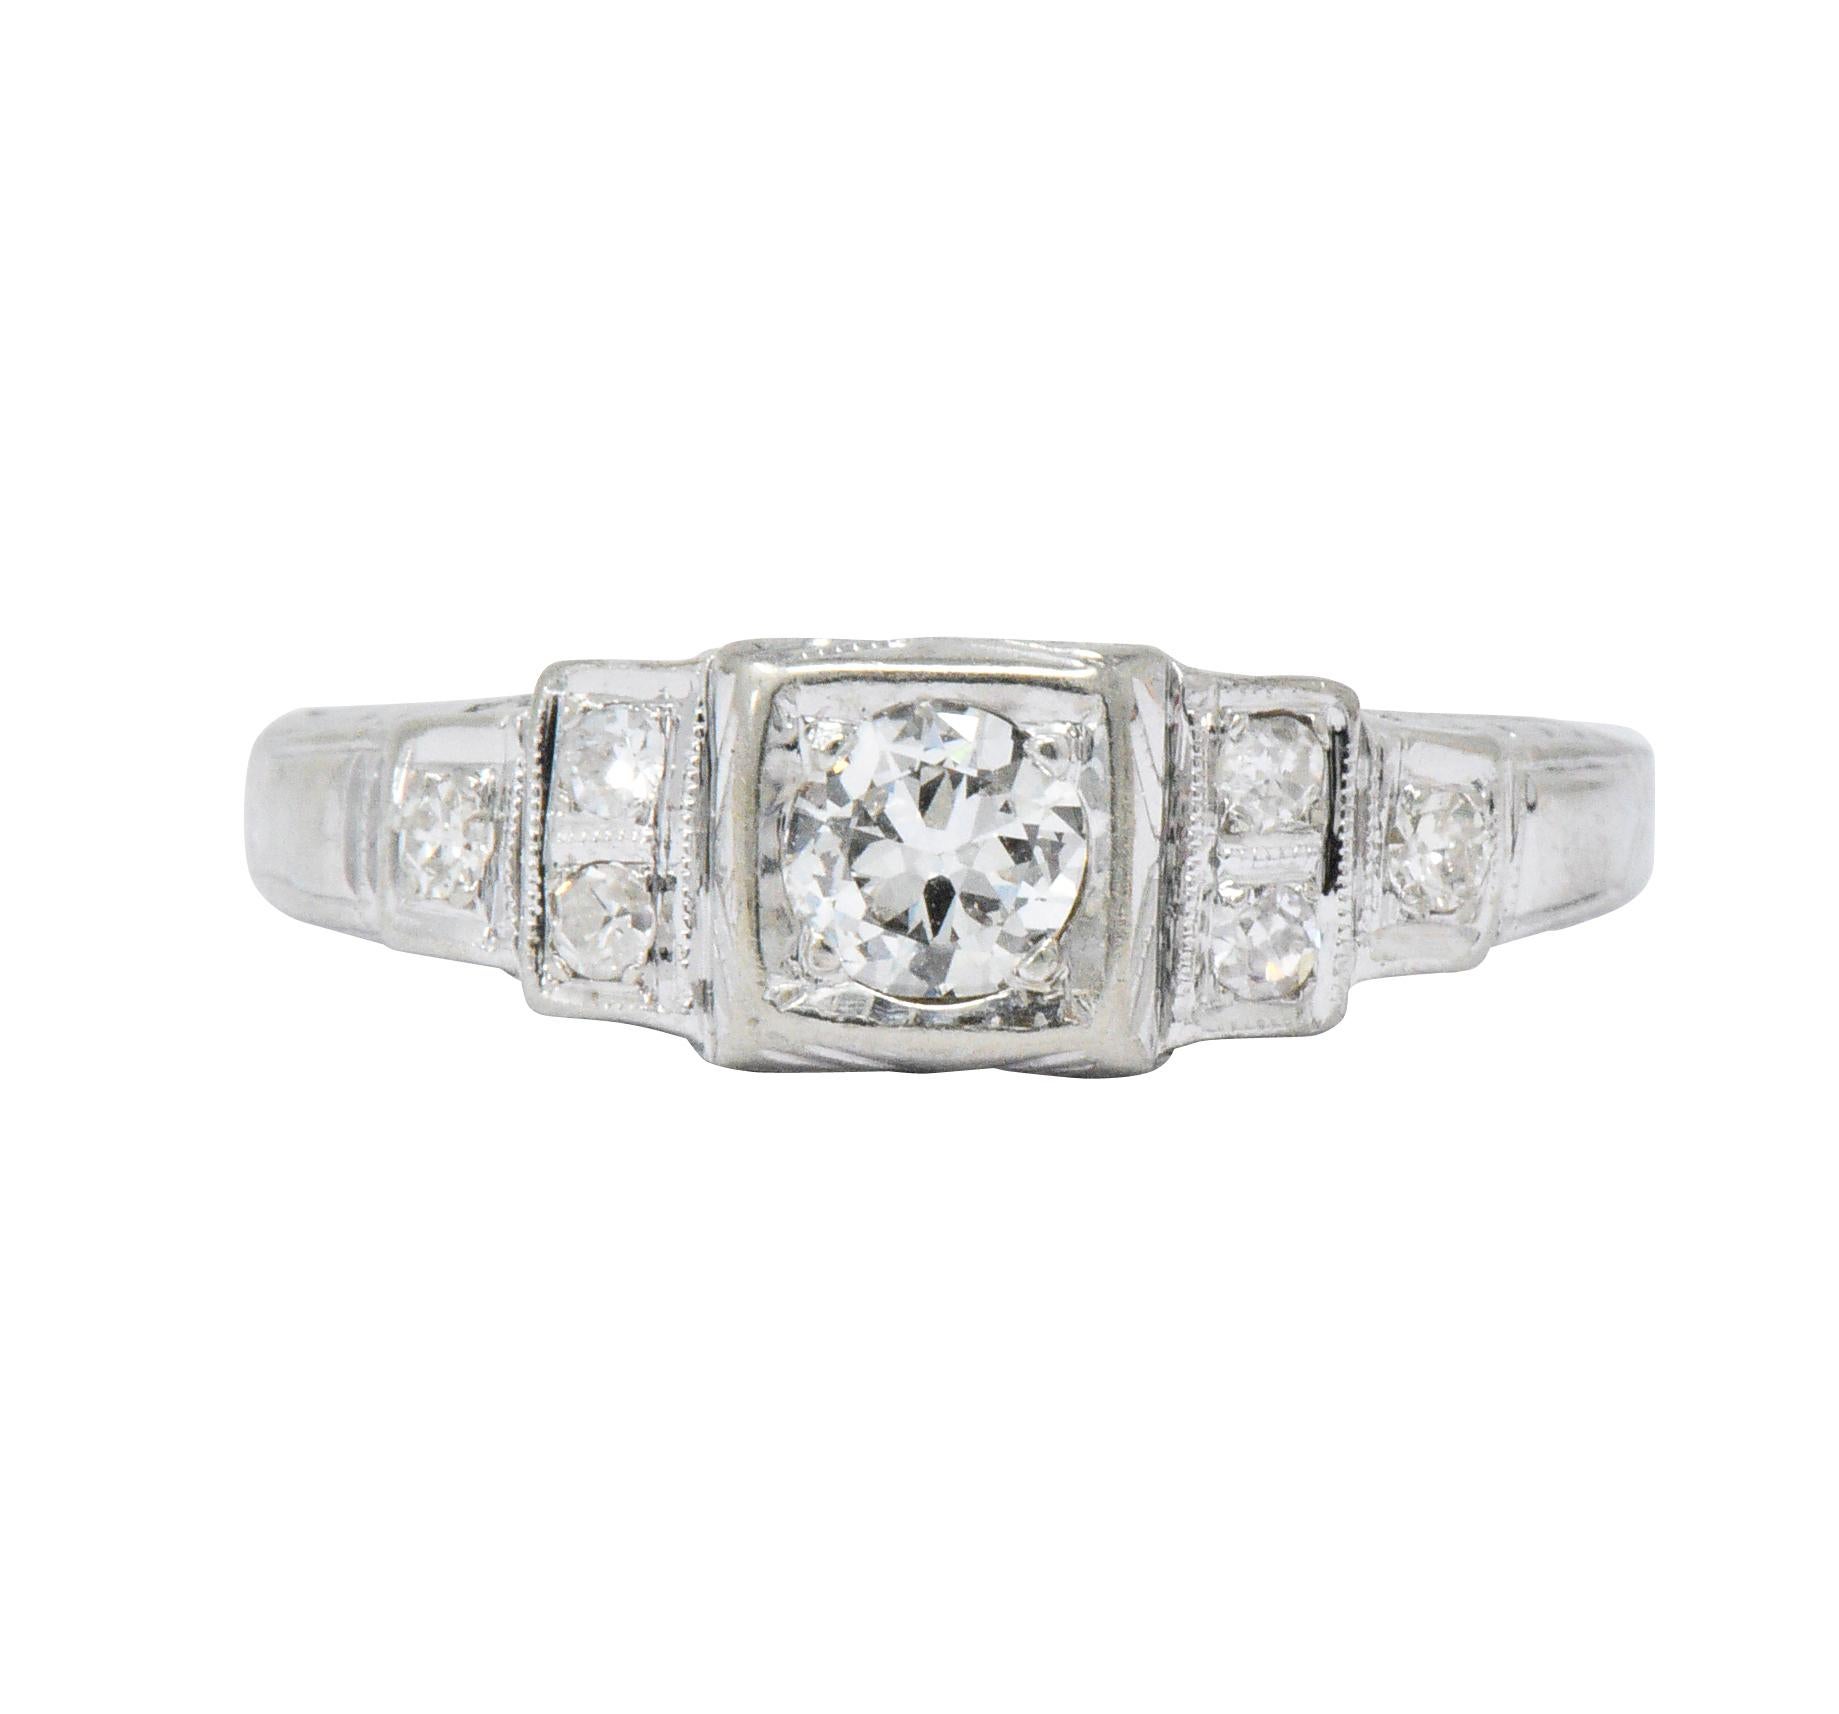 MK Edwardian Diamond 18 Karat White Gold Antique Engagement Ring